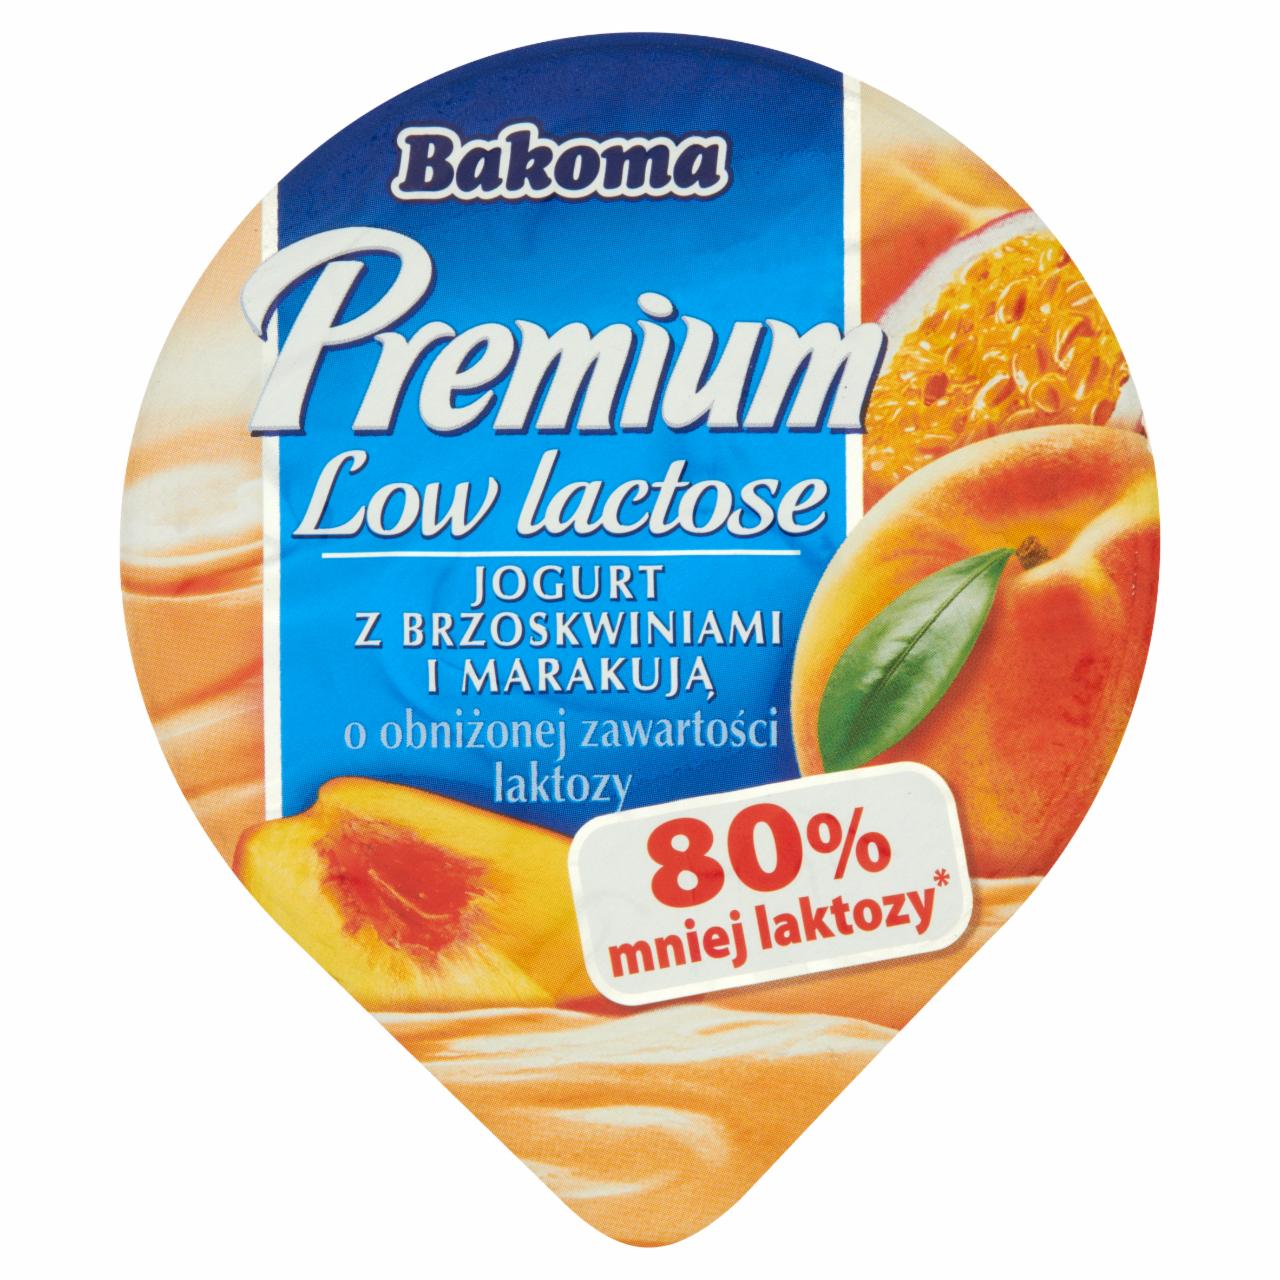 Zdjęcia - Bakoma Premium Low lactose Jogurt z brzoskwiniami i marakują o obniżonej zawartości laktozy 140 g